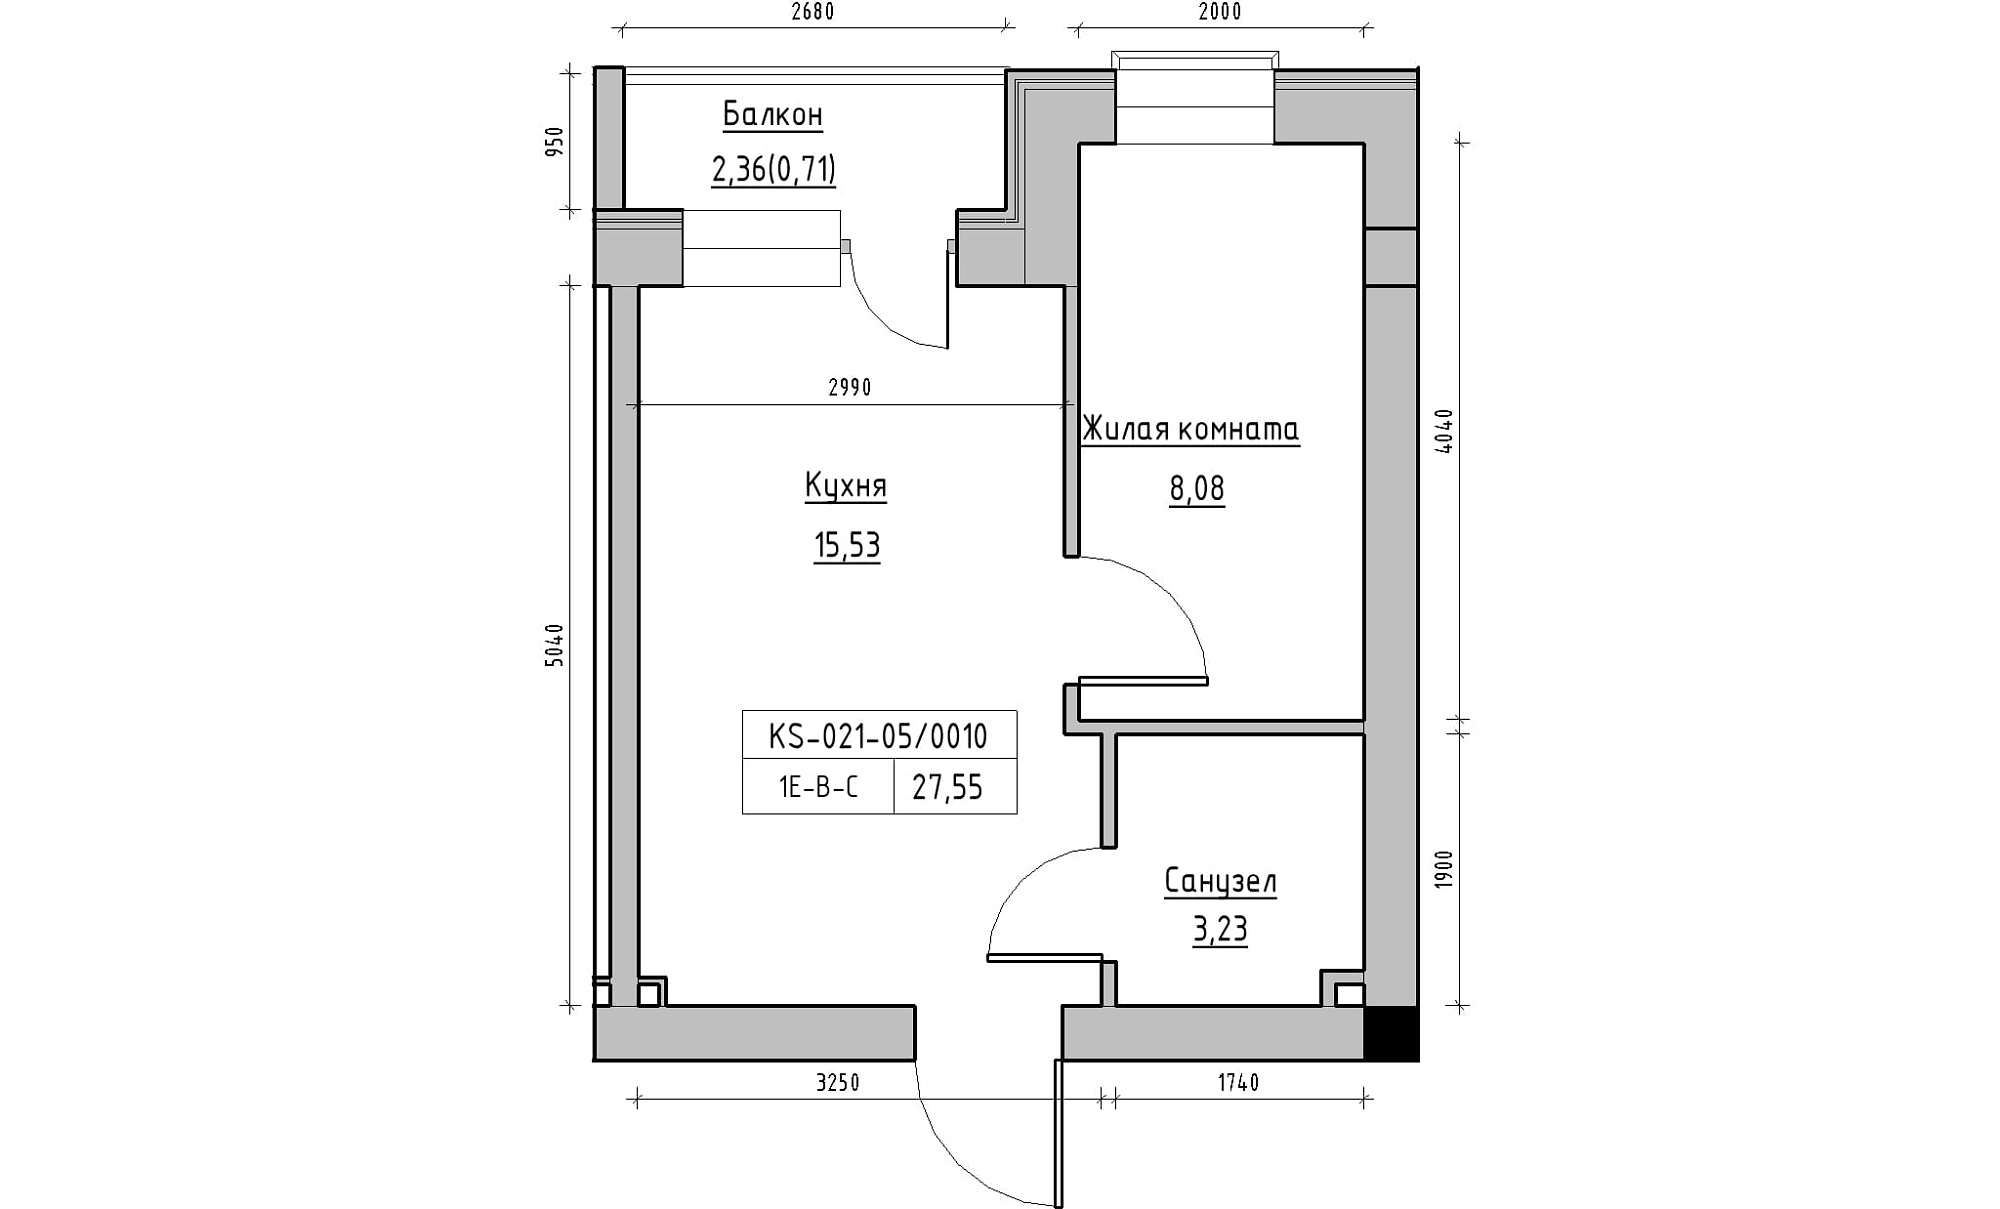 Планировка 1-к квартира площей 27.55м2, KS-021-05/0010.